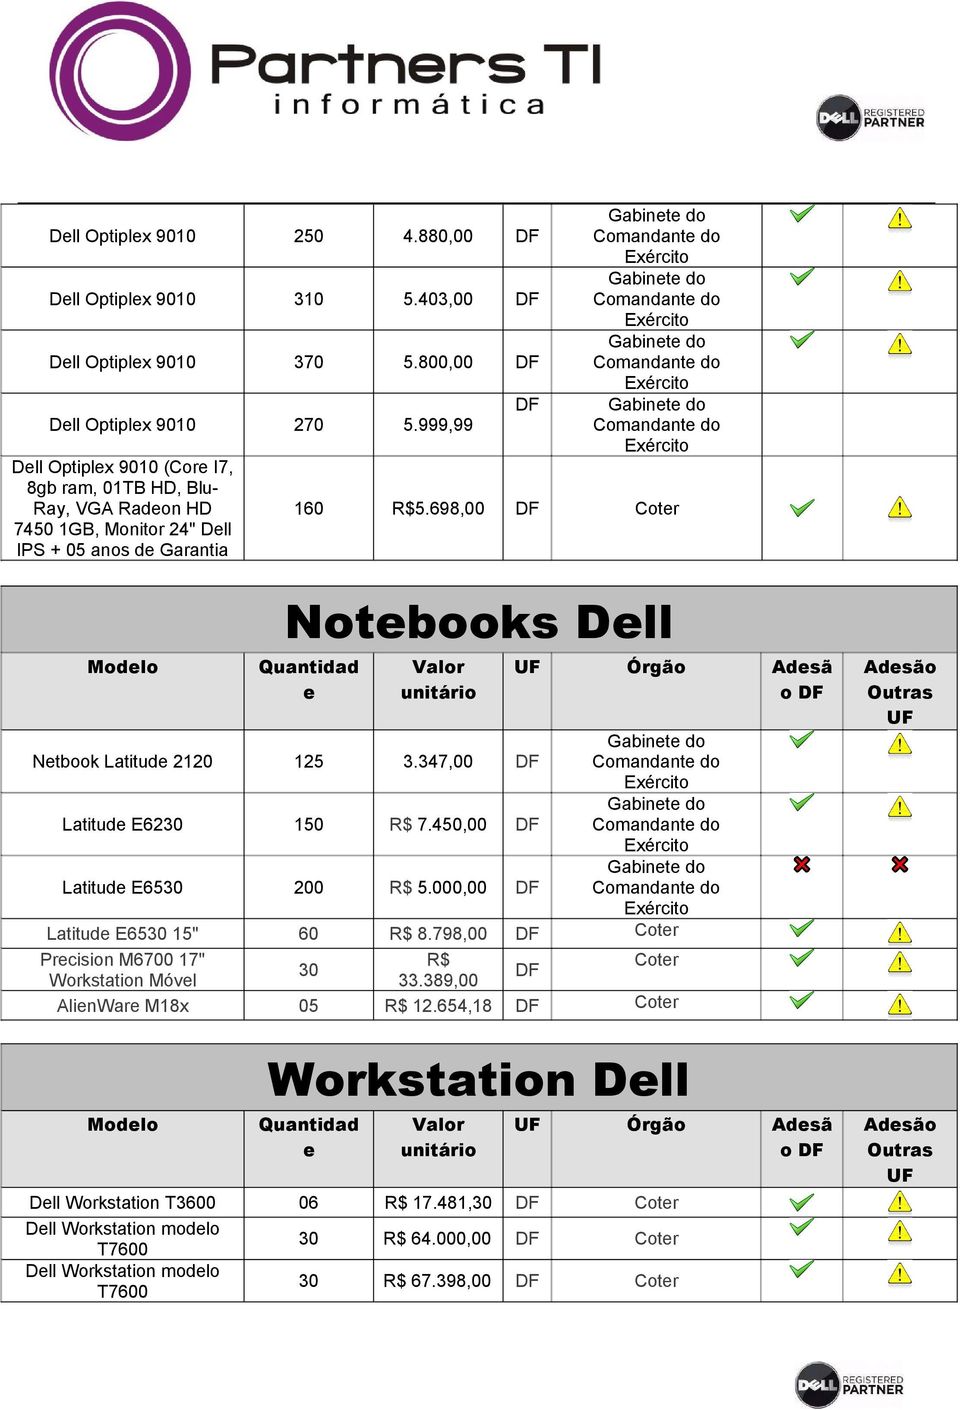 698,00 DF Coter 7450 1GB, Monitor 24" Dell IPS + 05 anos de Garantia Notebooks Dell Modelo Quantidad e Valor unitário UF Netbook Latitude 2120 125 3.347,00 DF Latitude E6230 150 R$ 7.